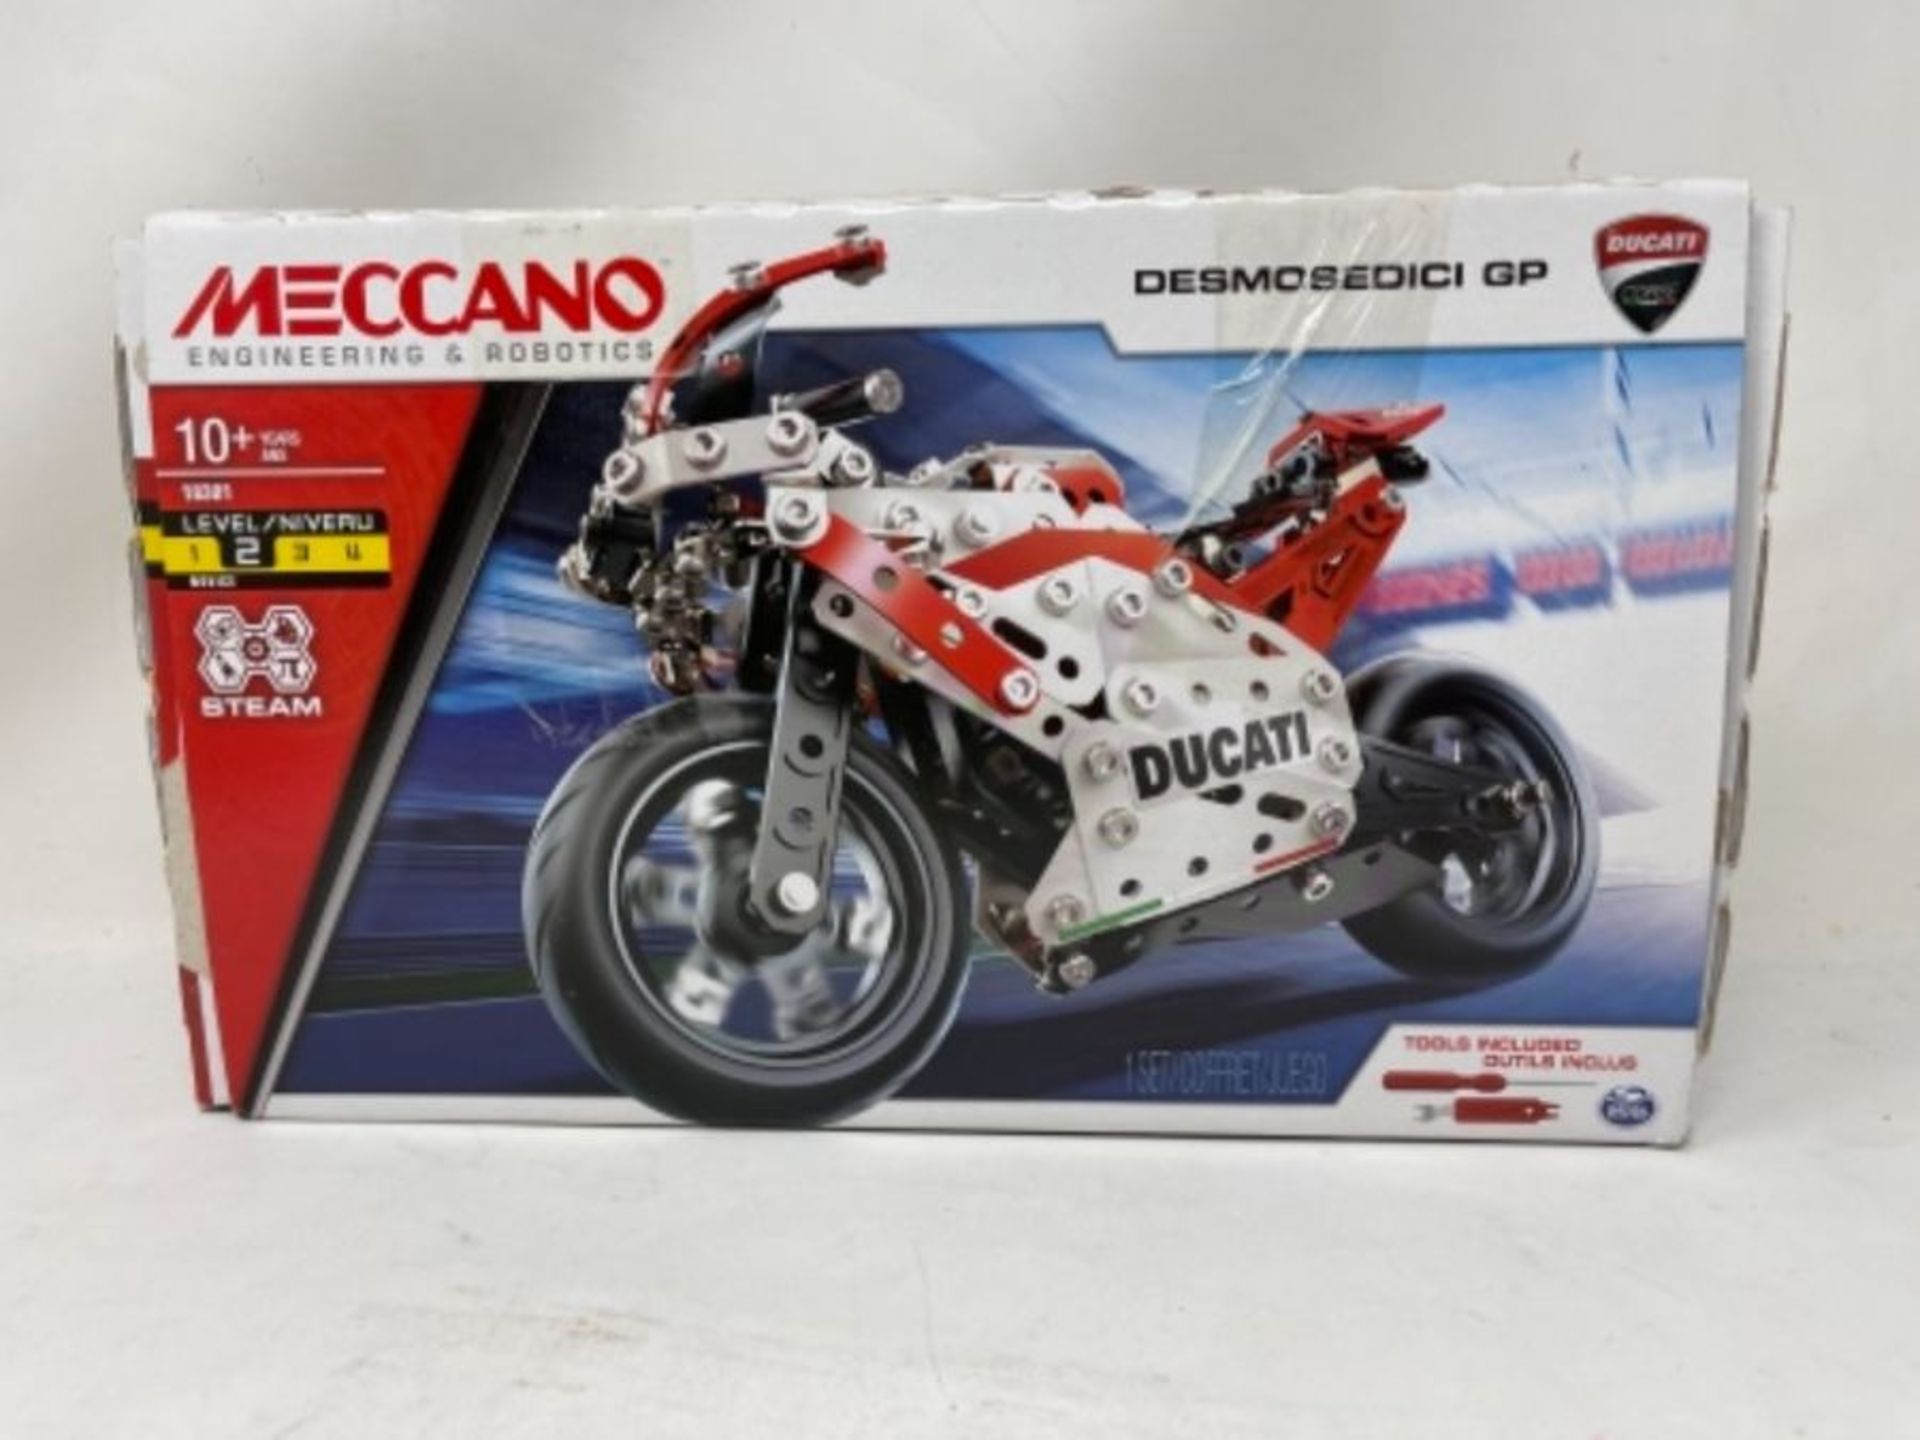 MECCANO  Ducati Desmosedici GP S.T.E.A.M Building Kit with Coil-spring Suspension, - Image 3 of 3